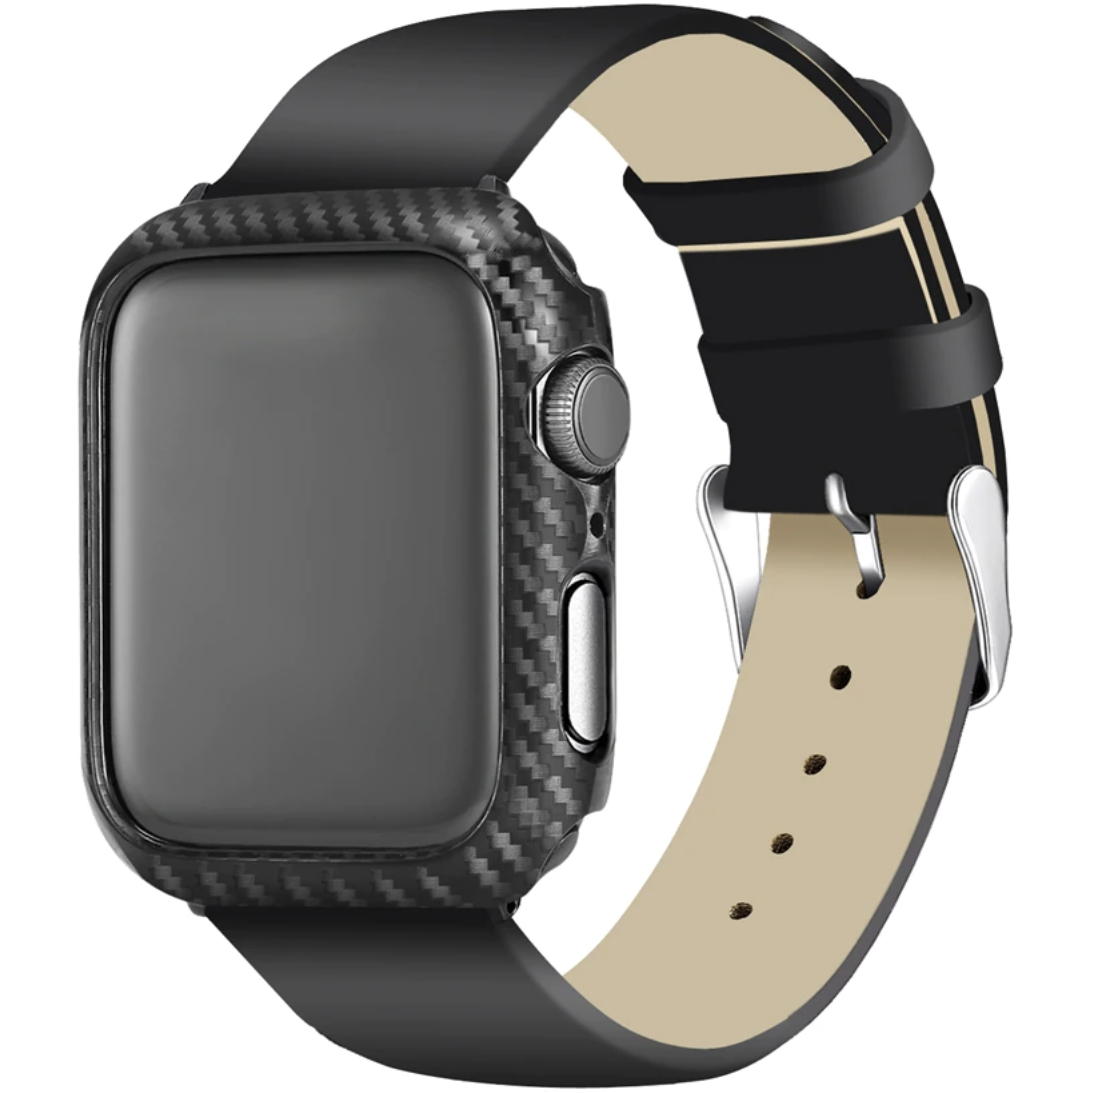 Carbon Fibre Apple Watch Case Cover | OzStraps